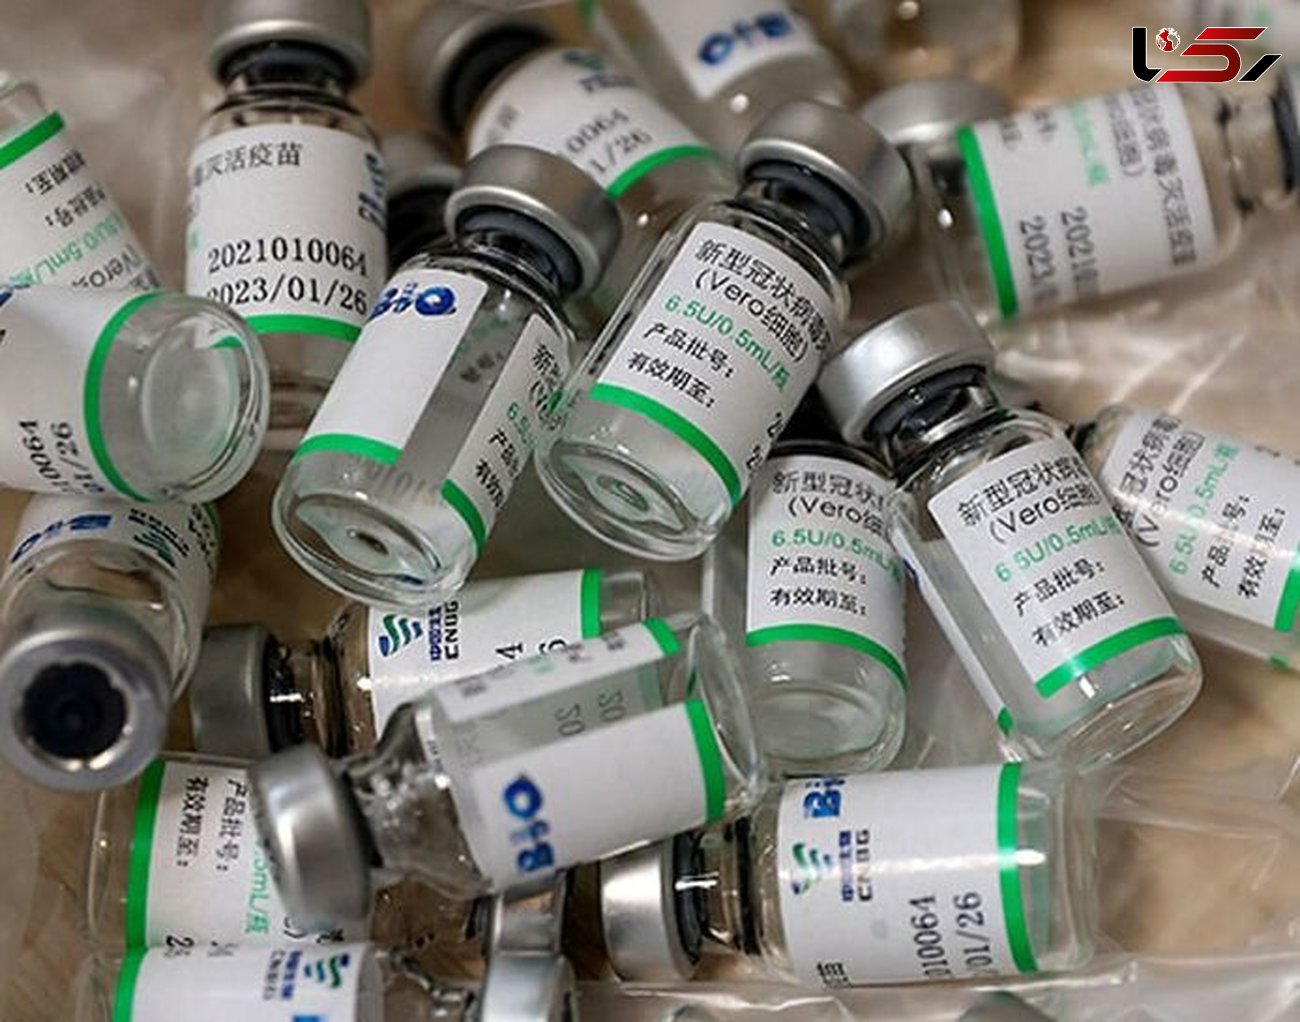 زمان پایان واکسیناسیون در ایران اعلام شد 